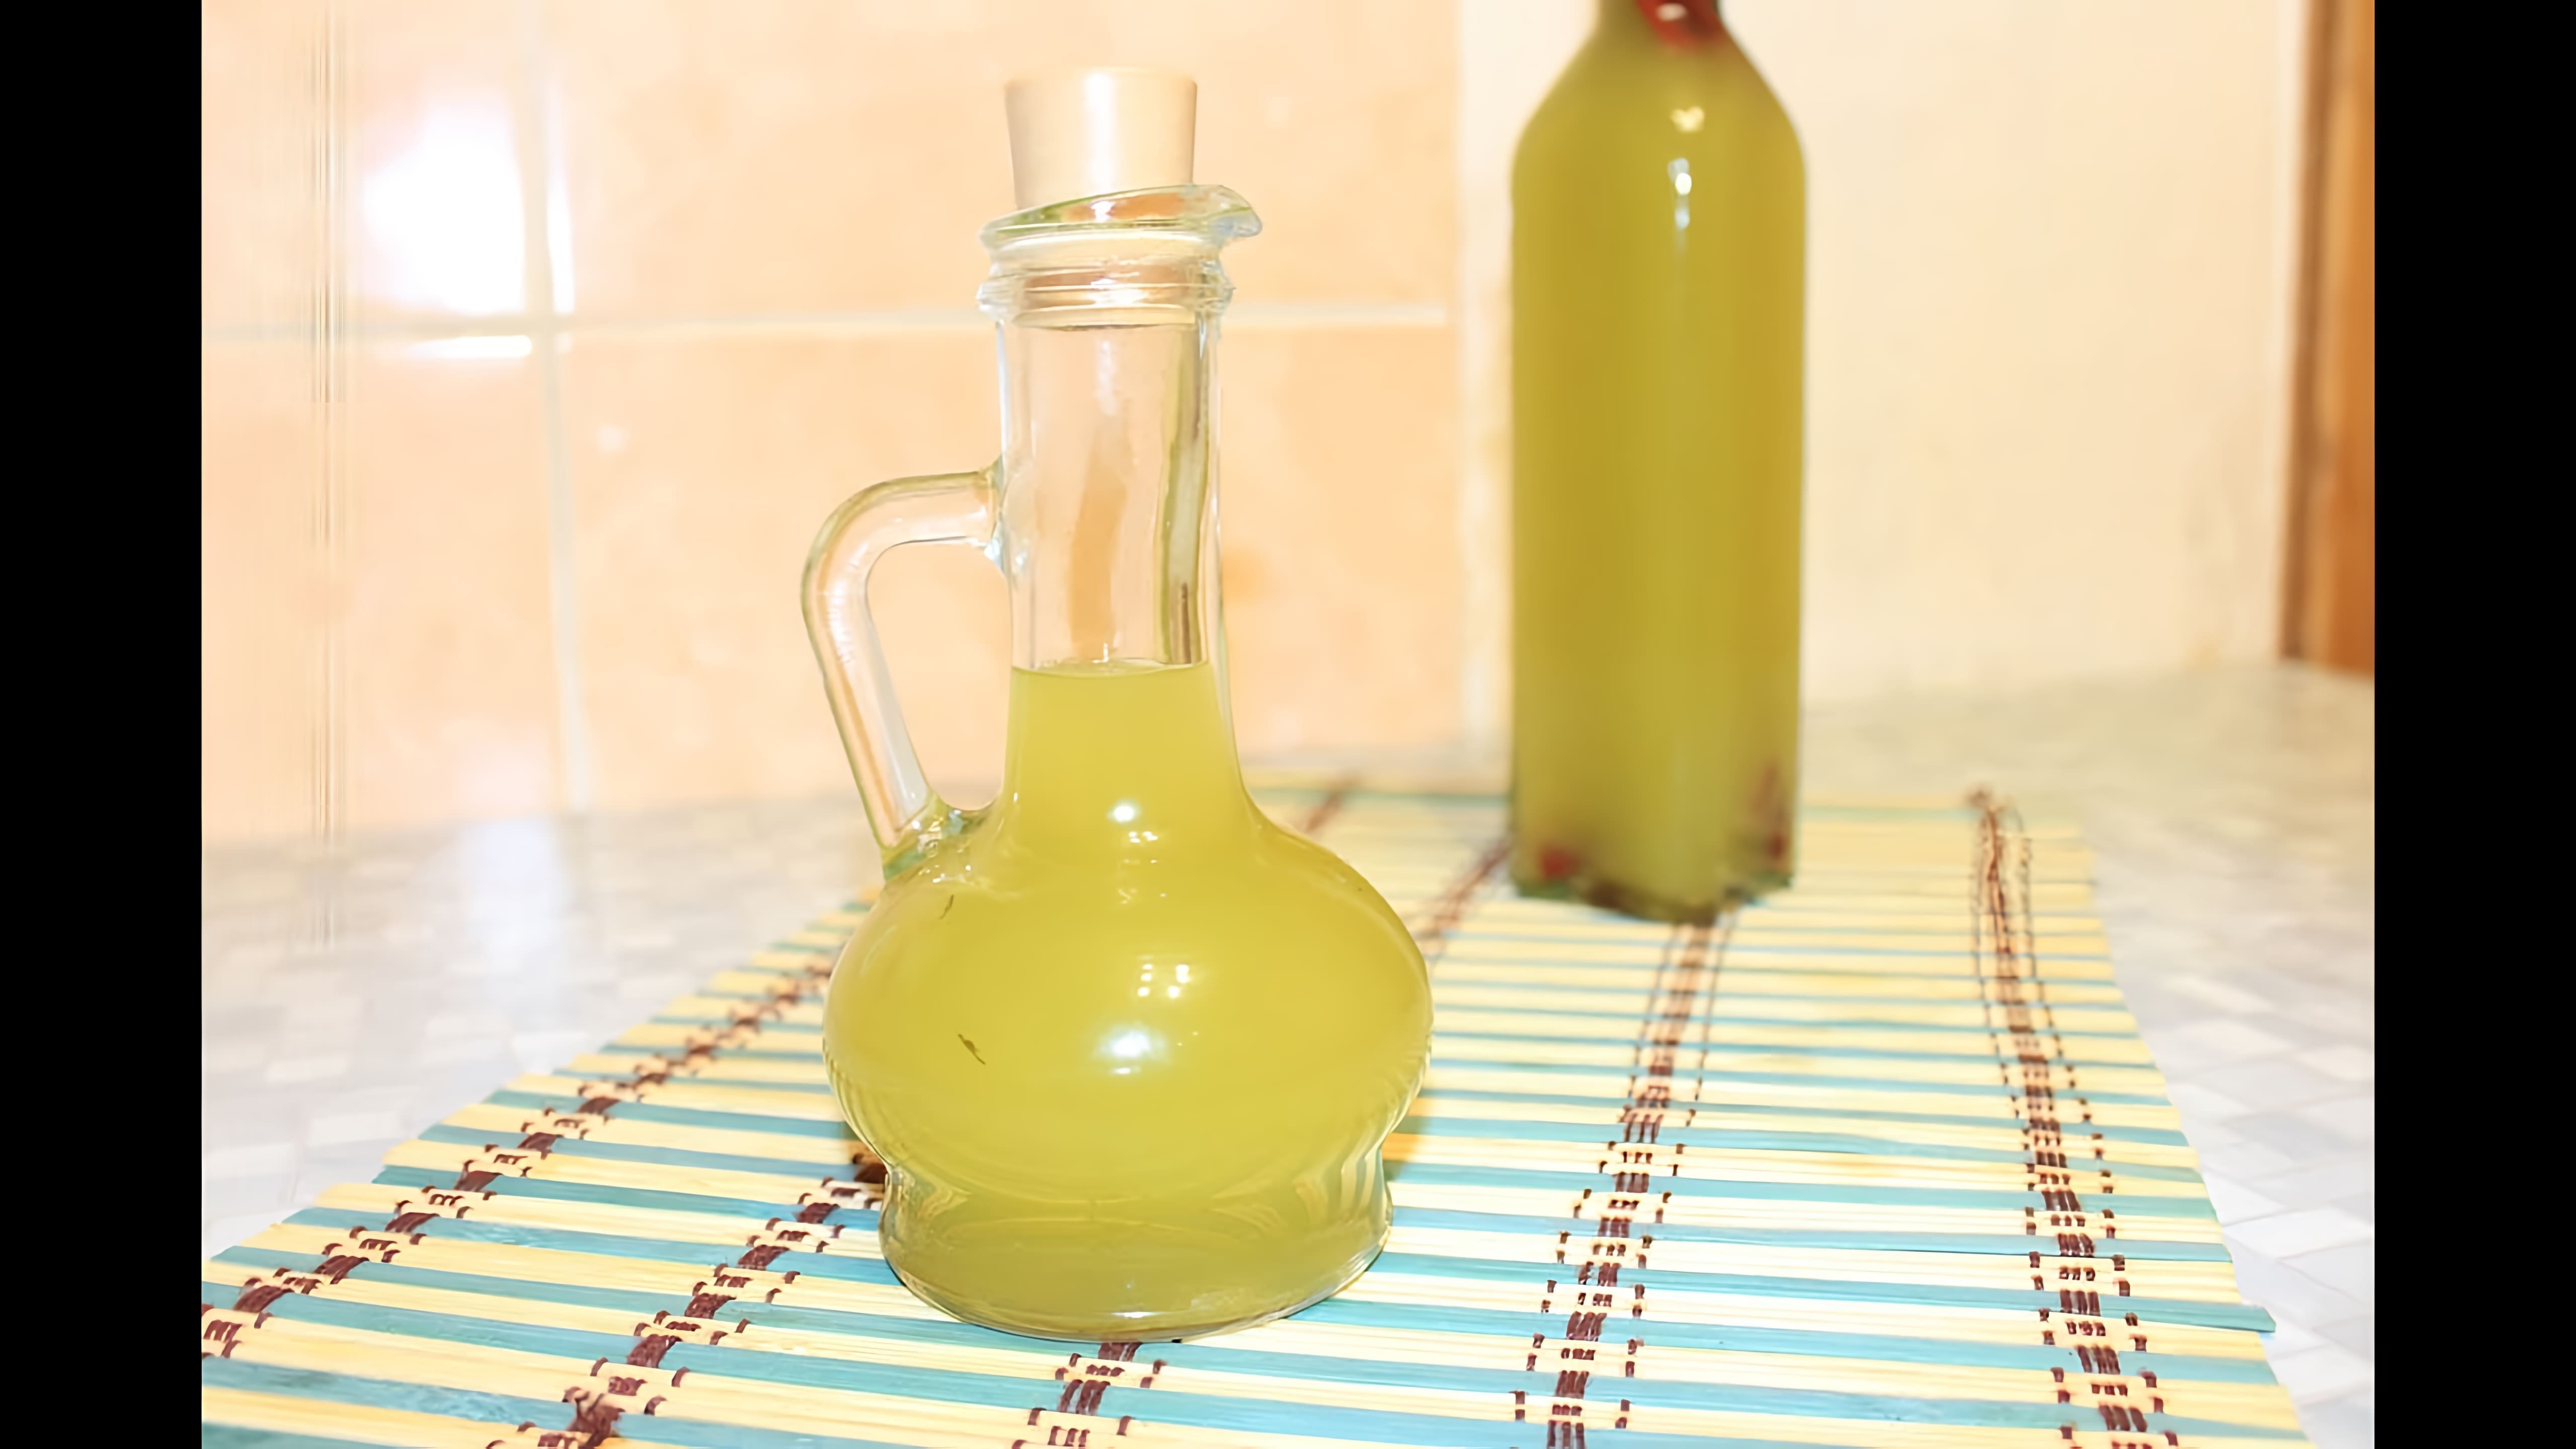 В этом видео демонстрируется процесс приготовления ароматного оливкового масла с чесноком и пряностями